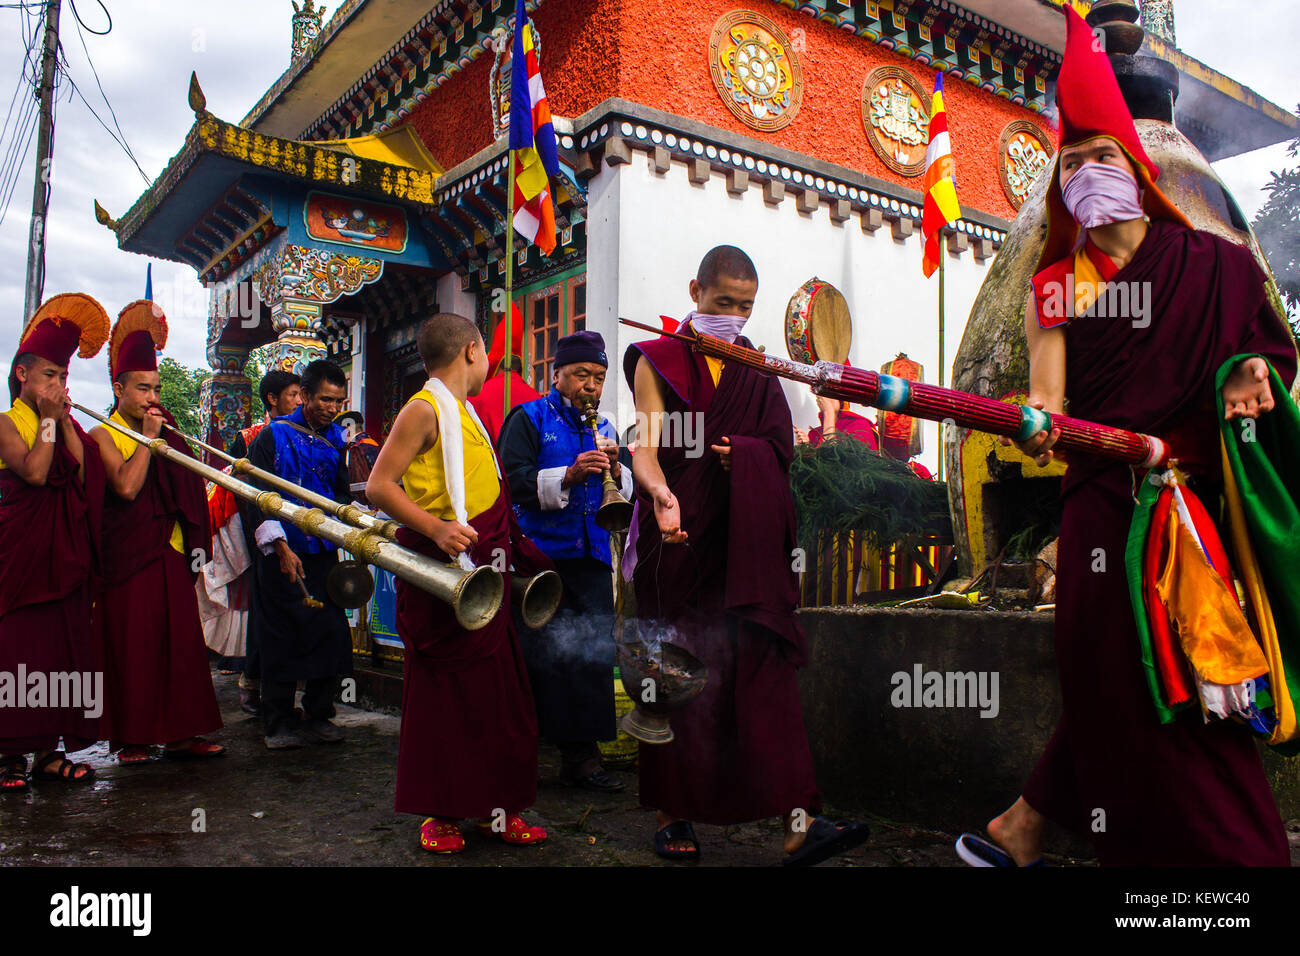 August 29, 2015 - Freundschaft, Harmonie, einem erhabenen Berg und eine zornvolle Gottheit''" Das sind die vier Dinge, die Pang lhabsol, ein jährliches Festival in Sikkim, über ist. Der friedlichen Hügel - Zustand war einmal zerrissen durch Streit und Feindschaft zwischen Die lepchas und bhutias (des tibetischen Ursprungs). Die Einheimischen glauben, dass Pang lhabsol erste gefeiert wurde irgendwann im 13. Jahrhundert der Anfang der friedlichen Beziehungen zwischen den kriegführenden Gruppen zu markieren. lepcha Chief thekongtek und tibetischen Kronprinz khya bumsa neun Platten errichtet an kabilunchok (in der Nähe von Gangtok, die Hauptstadt), gebunden Tierdärme aro Stockfoto